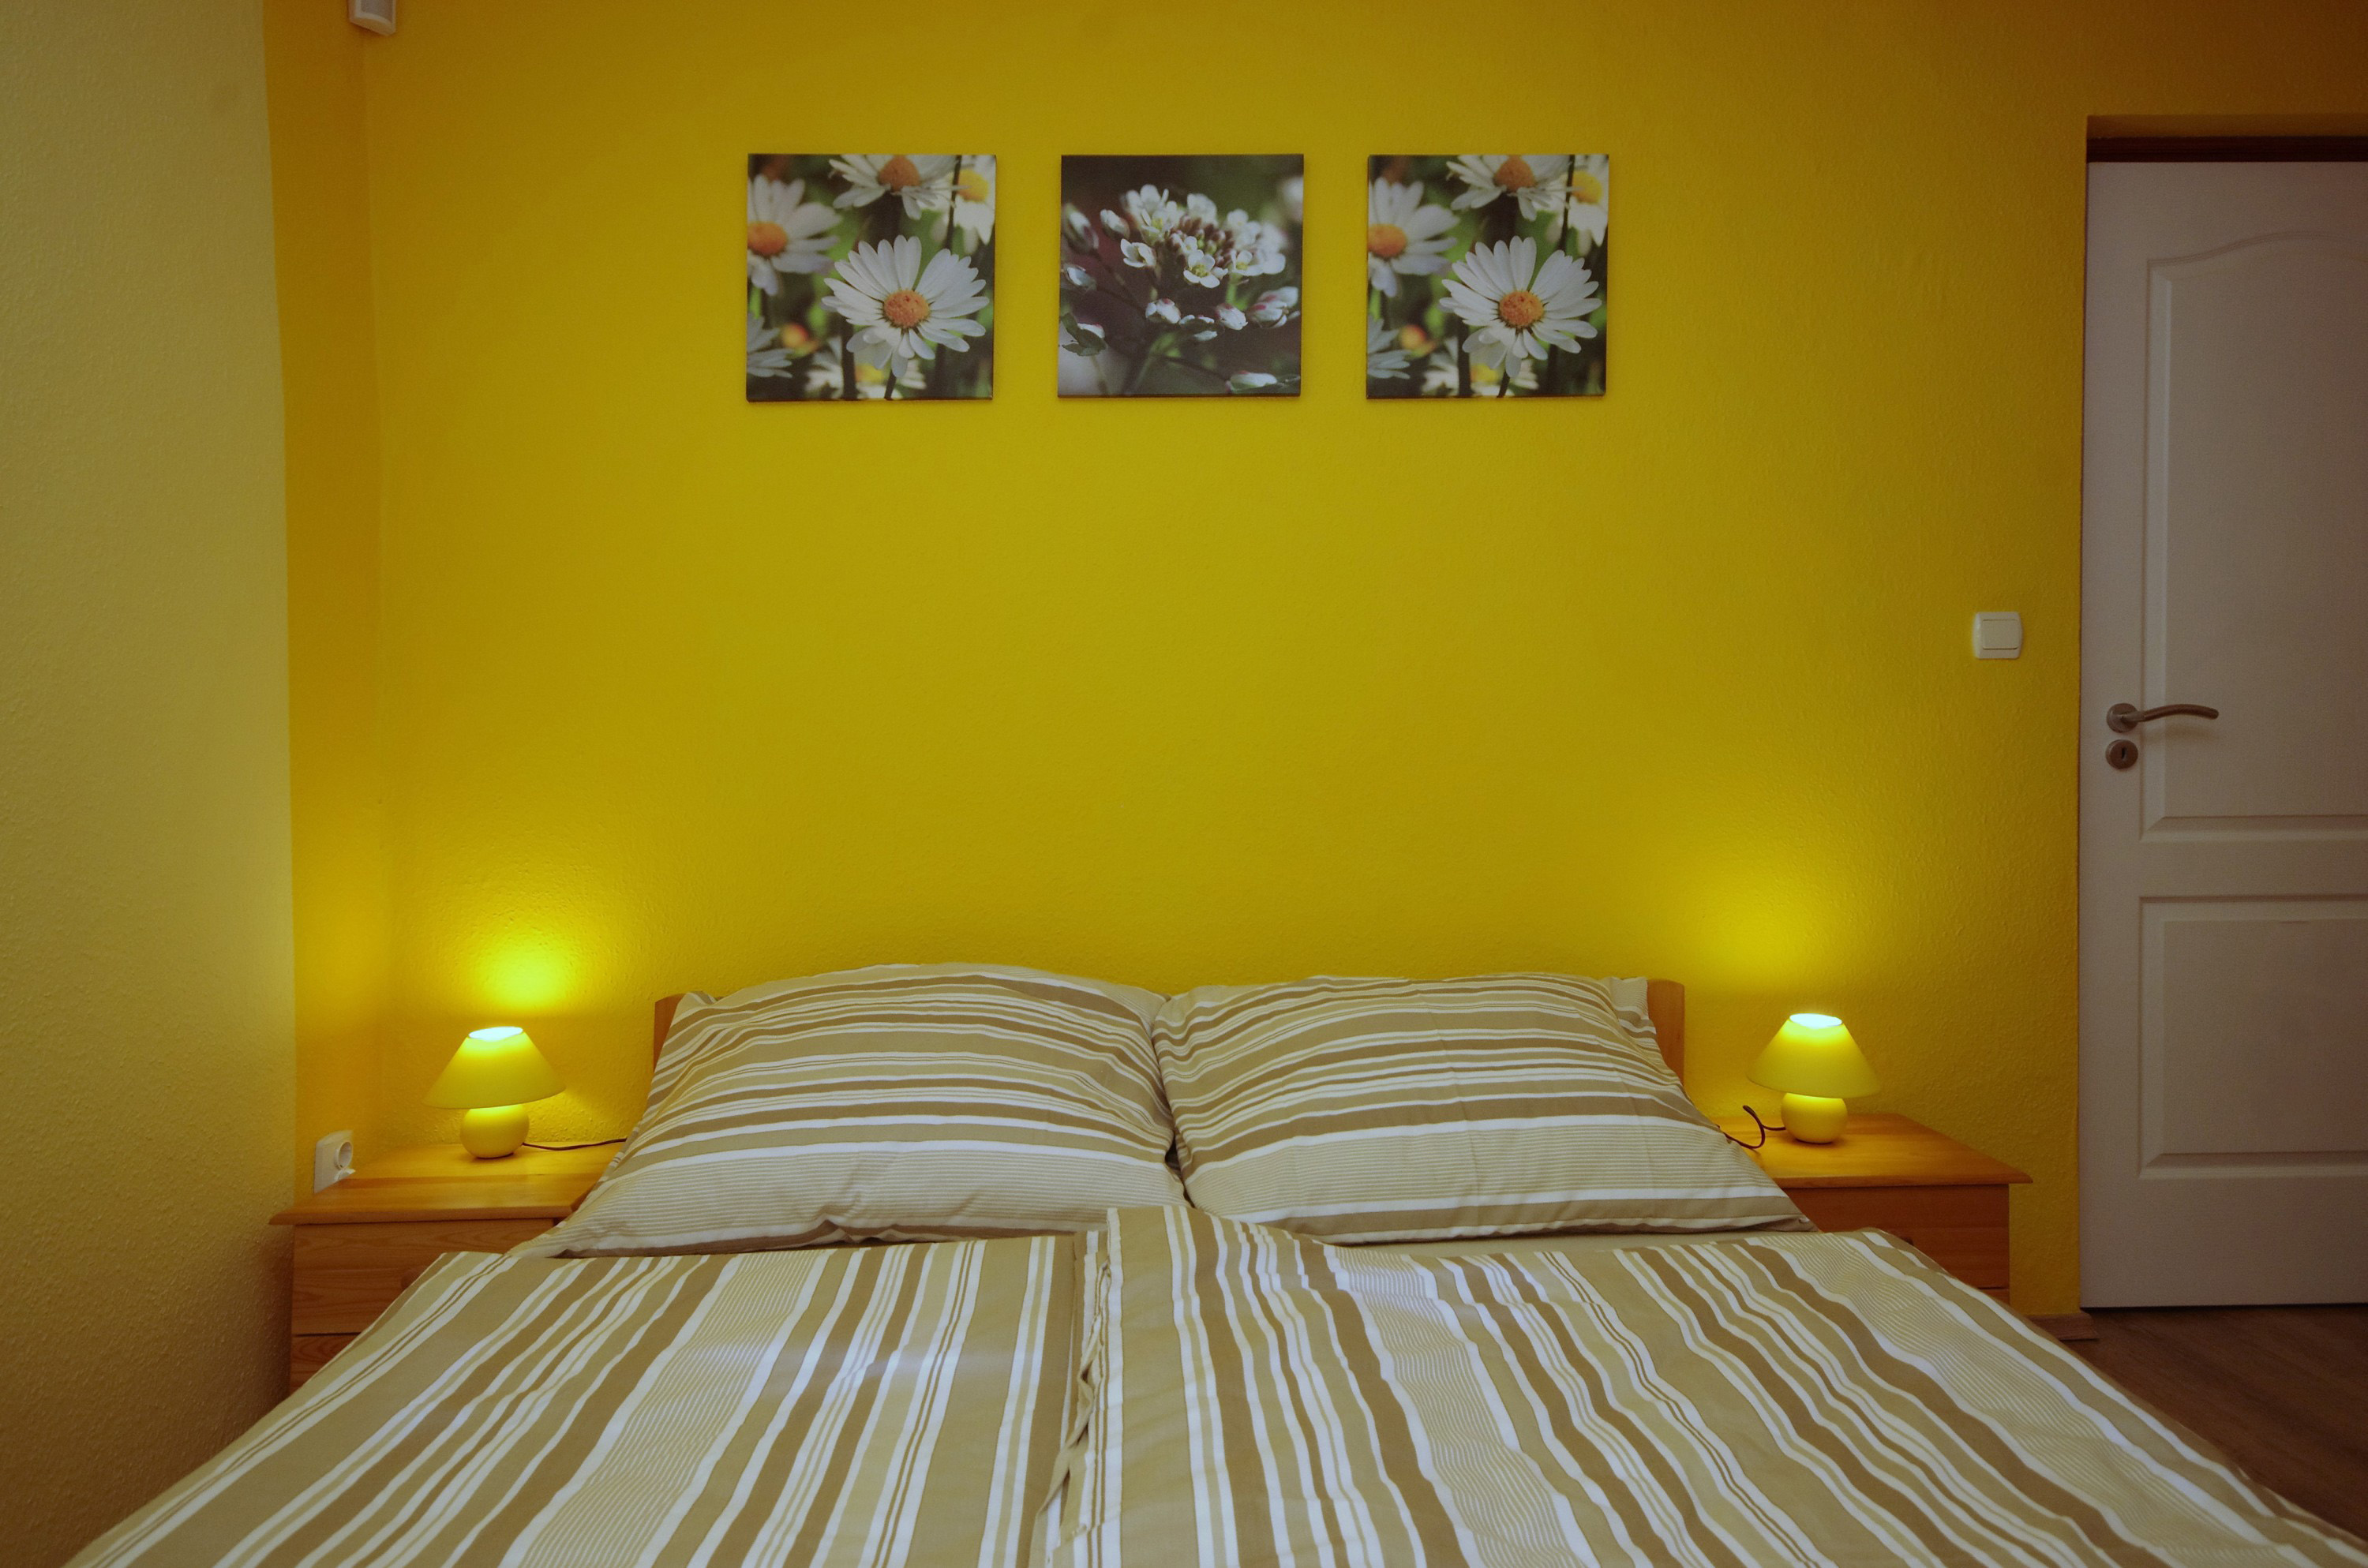 Kétszemélyes francia ágy és éjjeli szekrények a nyári szobában a gyulai Bodza apartmanban